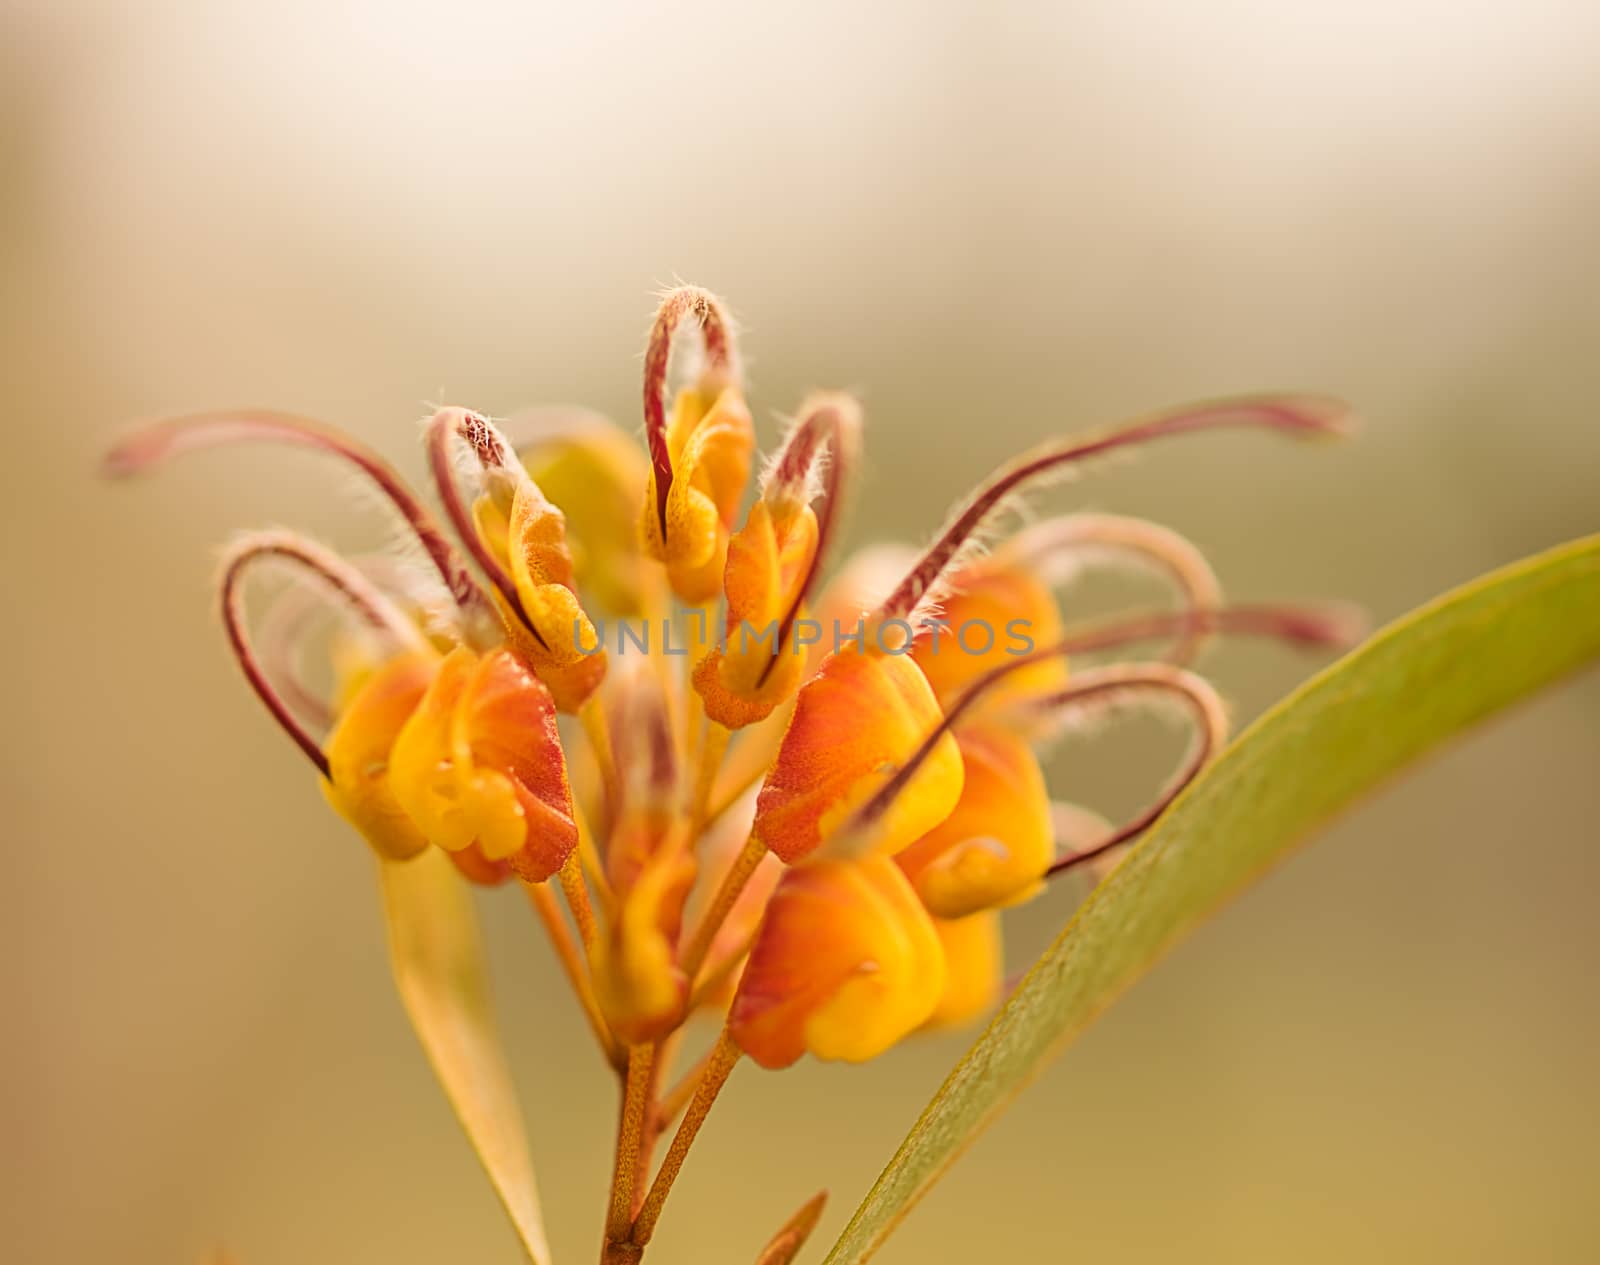  An Australian Wildflower Grevillea venusta by sherj